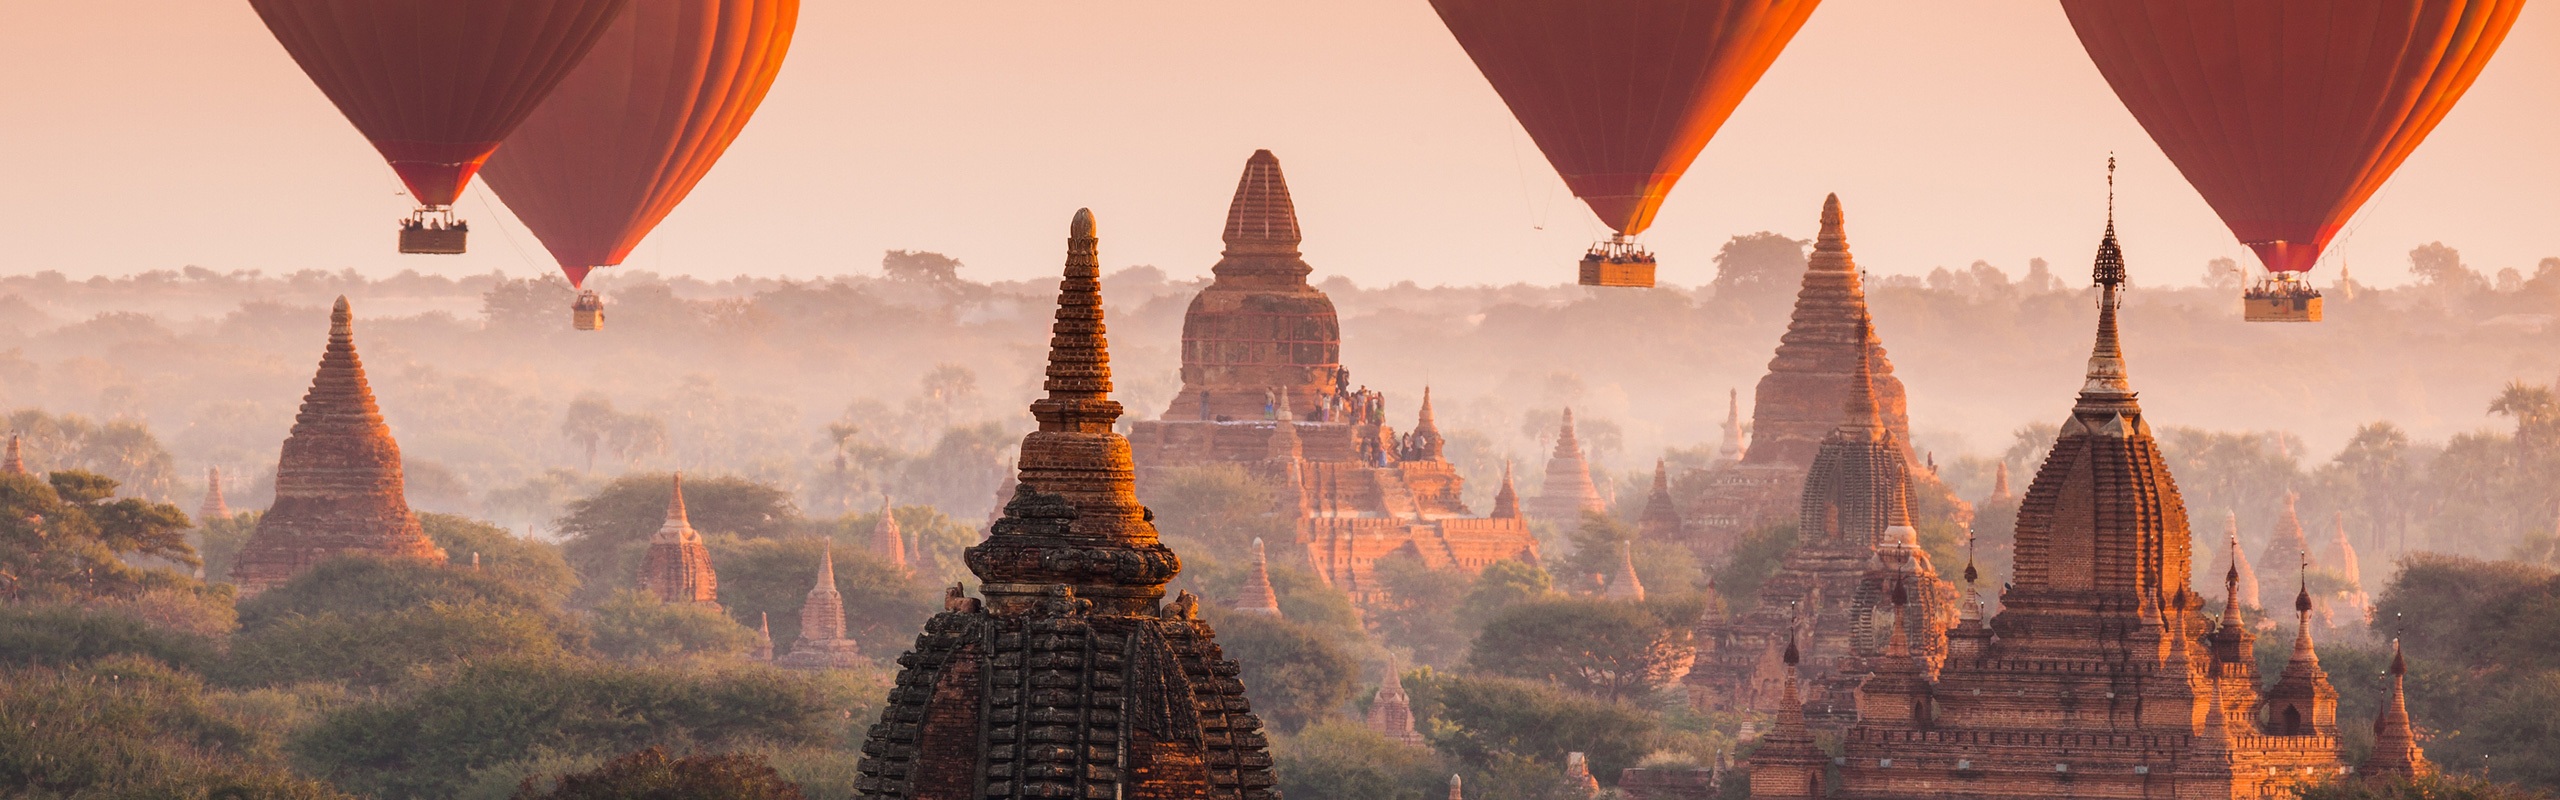 Myanmar Travel Reviews